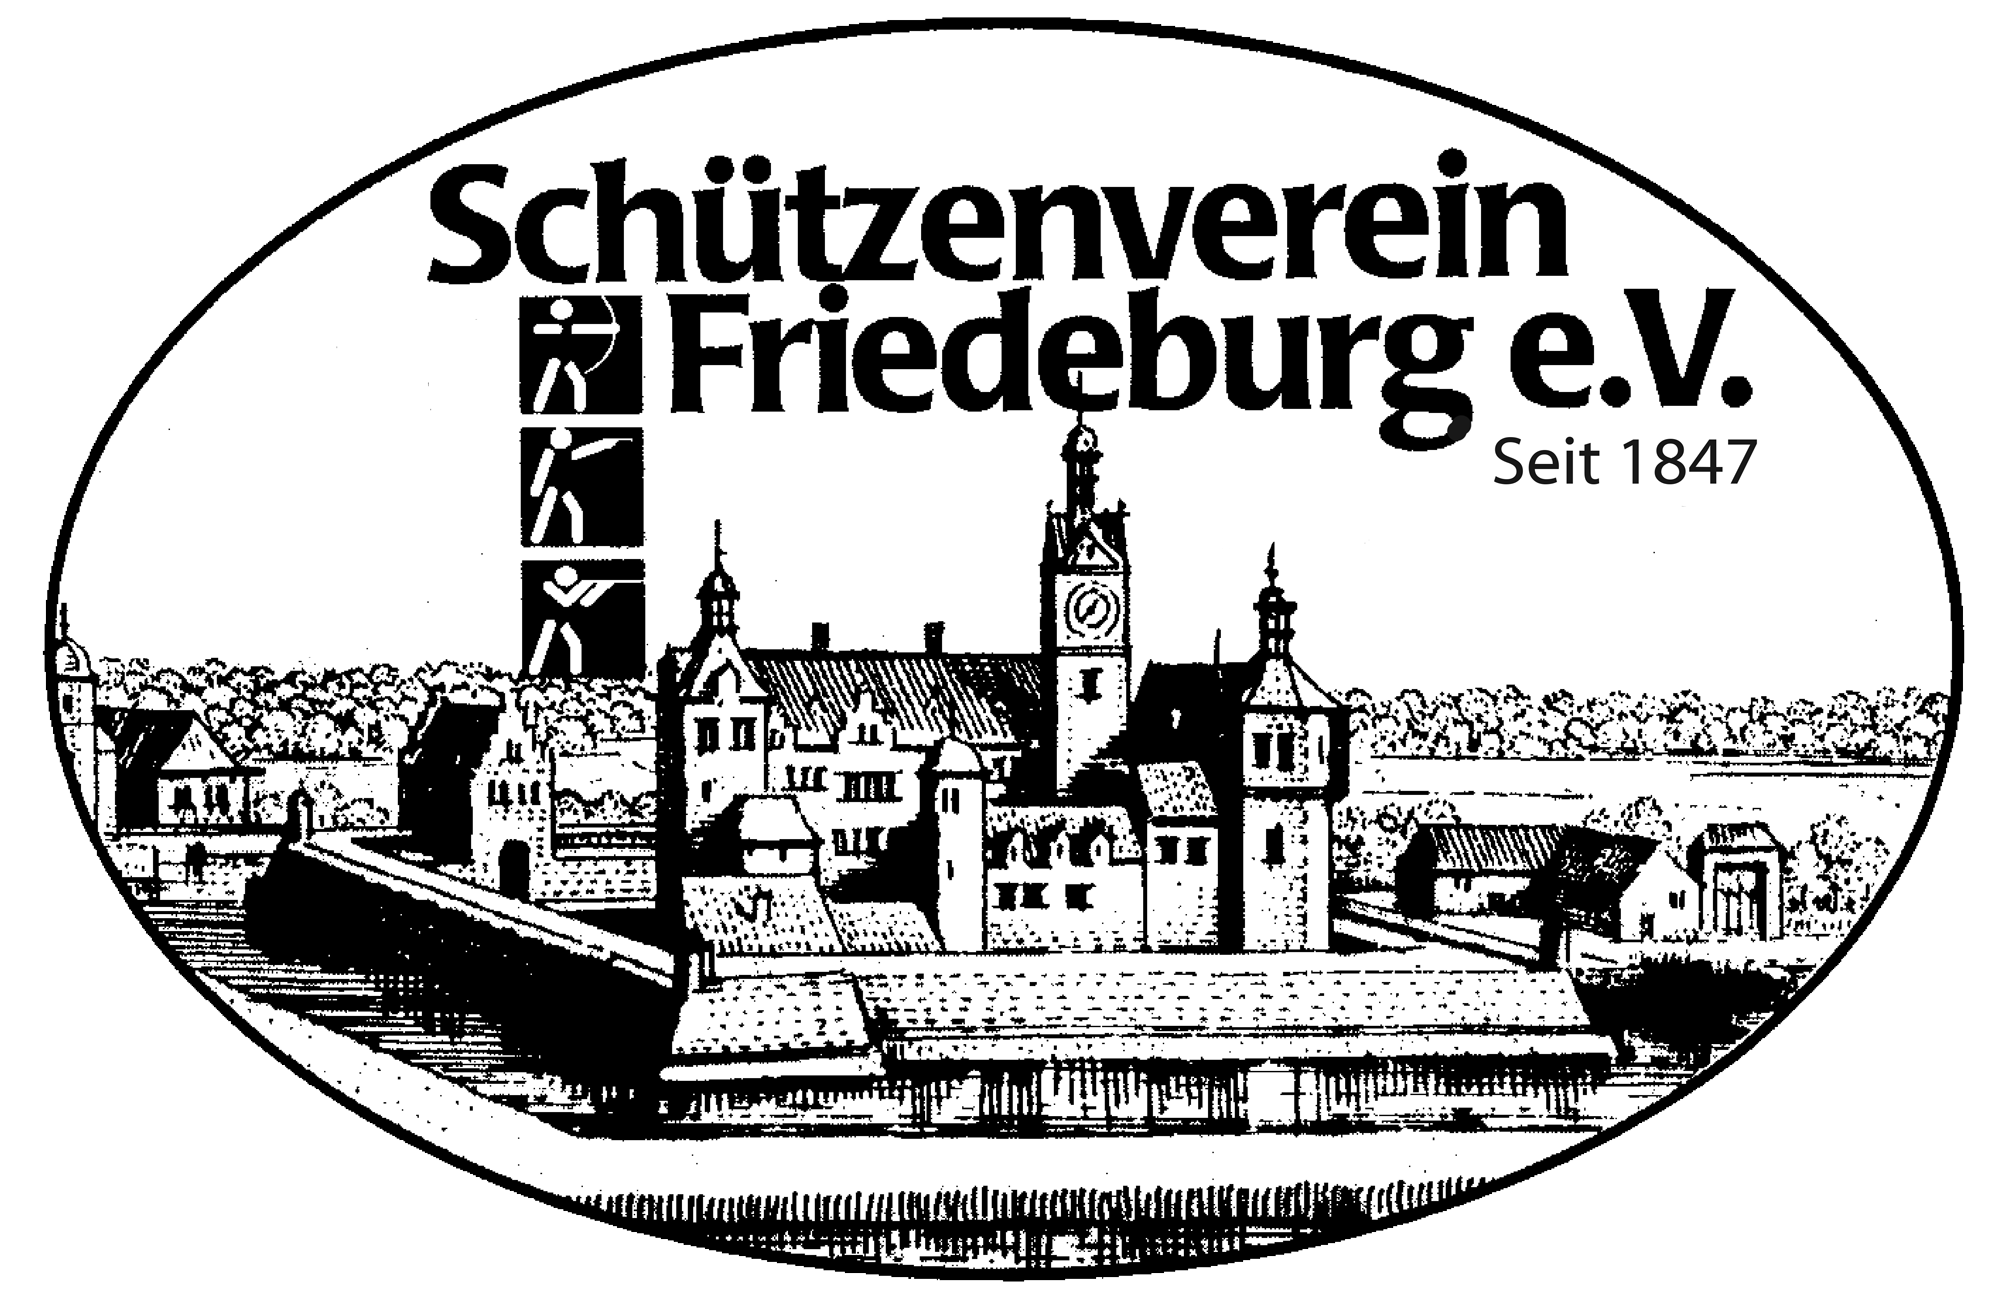 (c) Schuetzenverein-friedeburg.de